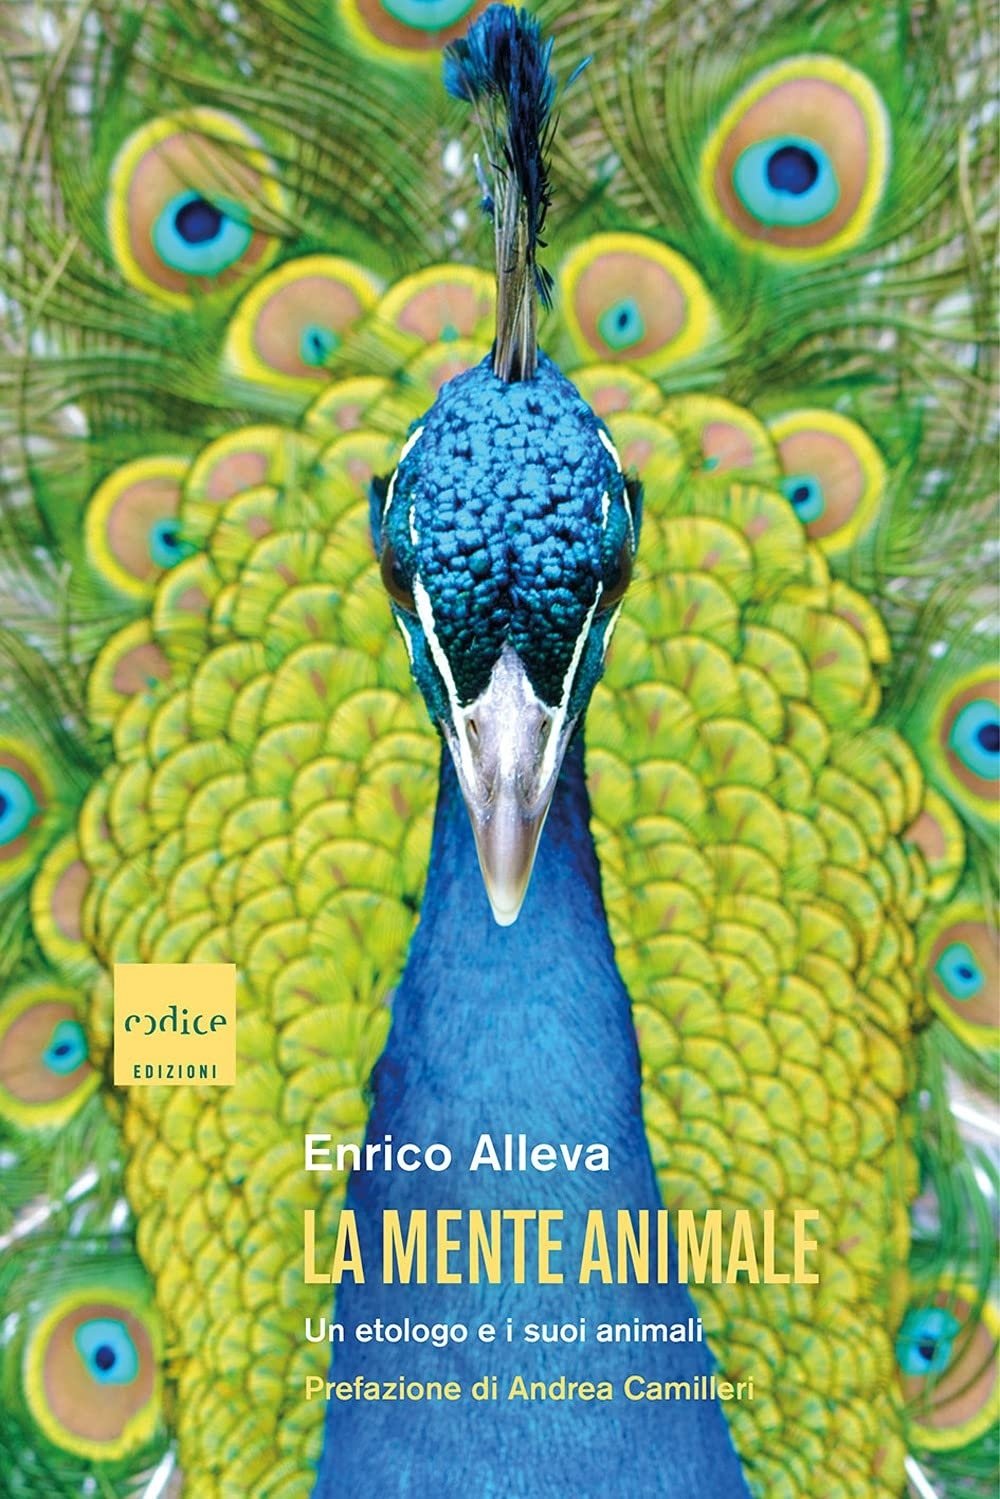 Enrico Alleva – La mente animale. Un etologo e i suoi animali (Codice, Torino 2021)